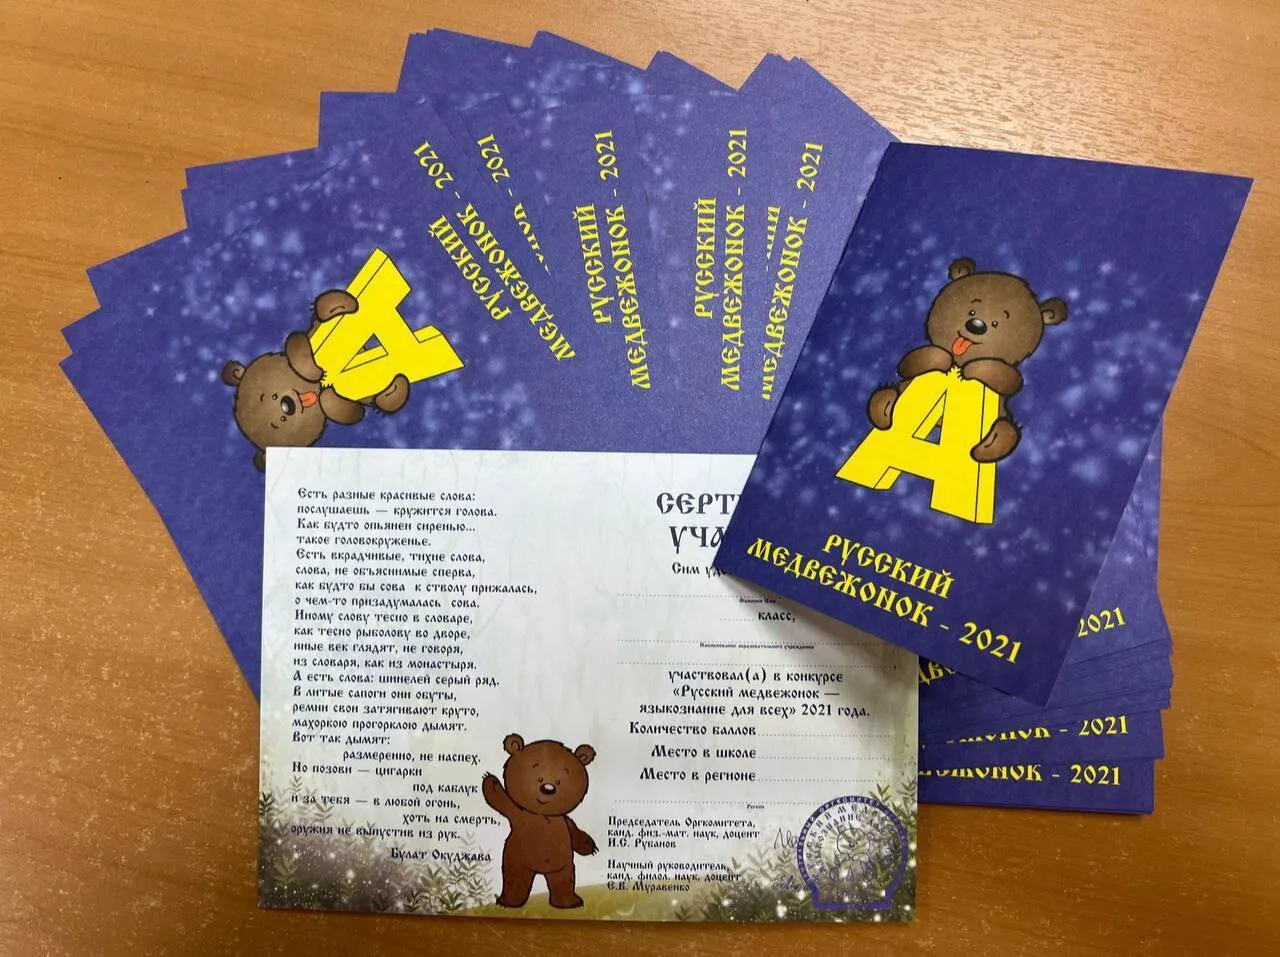 Русский медвежонок ответы и задания конкурса | ЕГЭ ОГЭ СТАТГРАД ВПР баллов